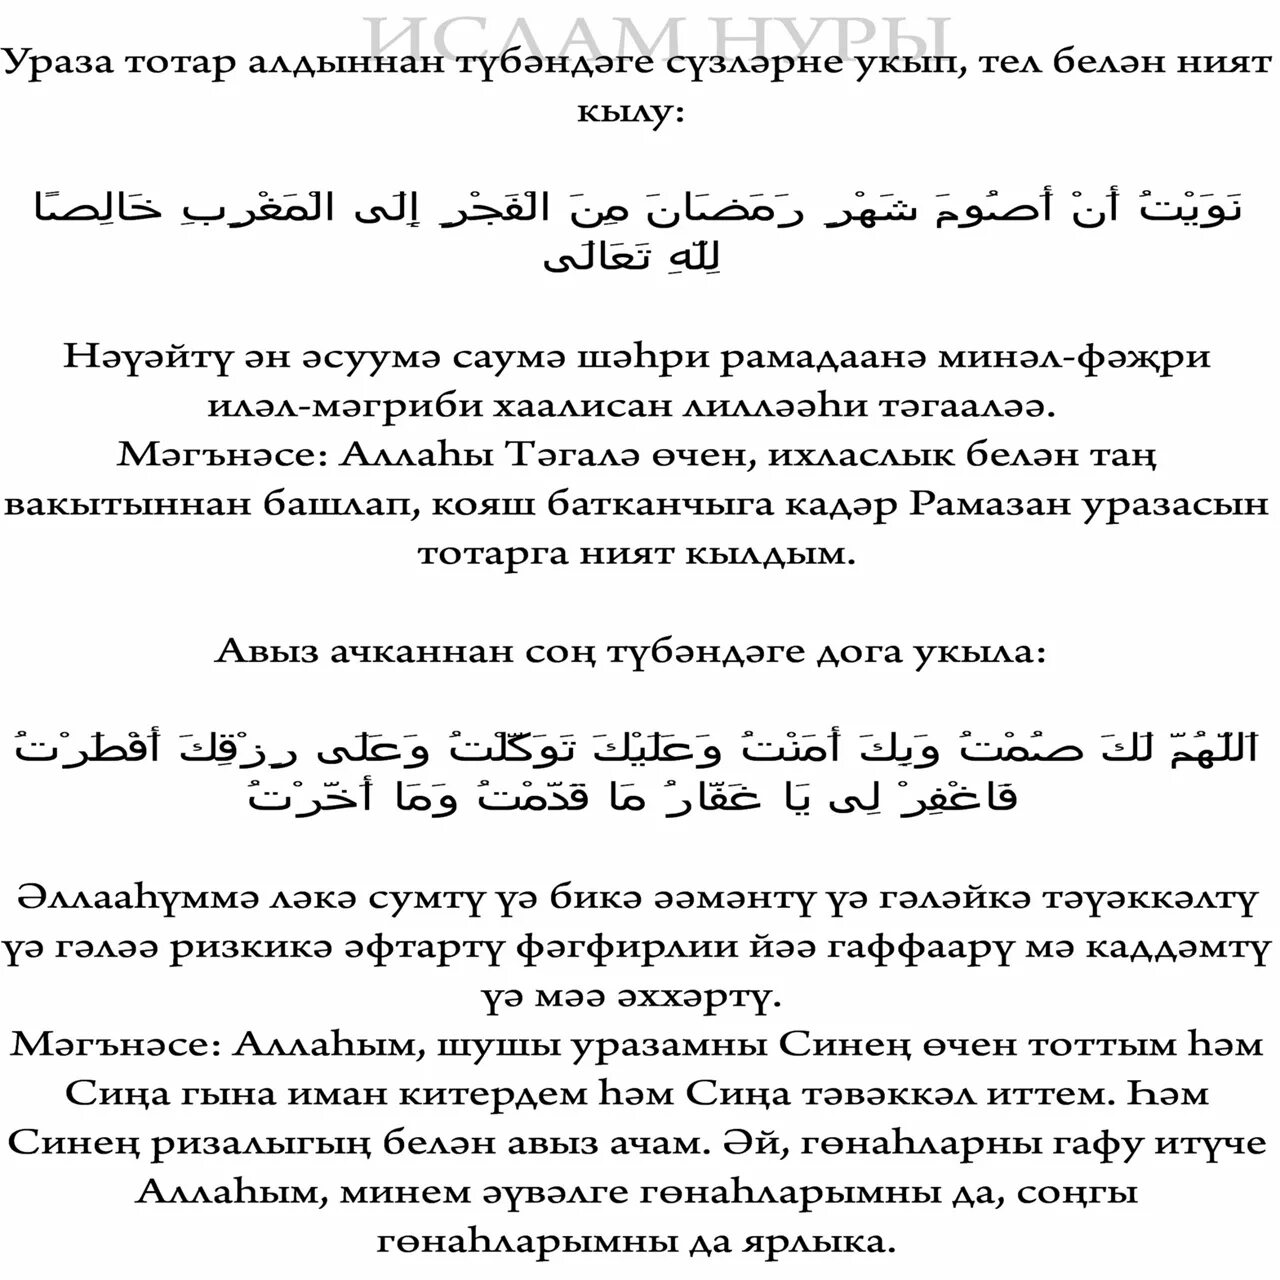 Что читать на сухур на татарском